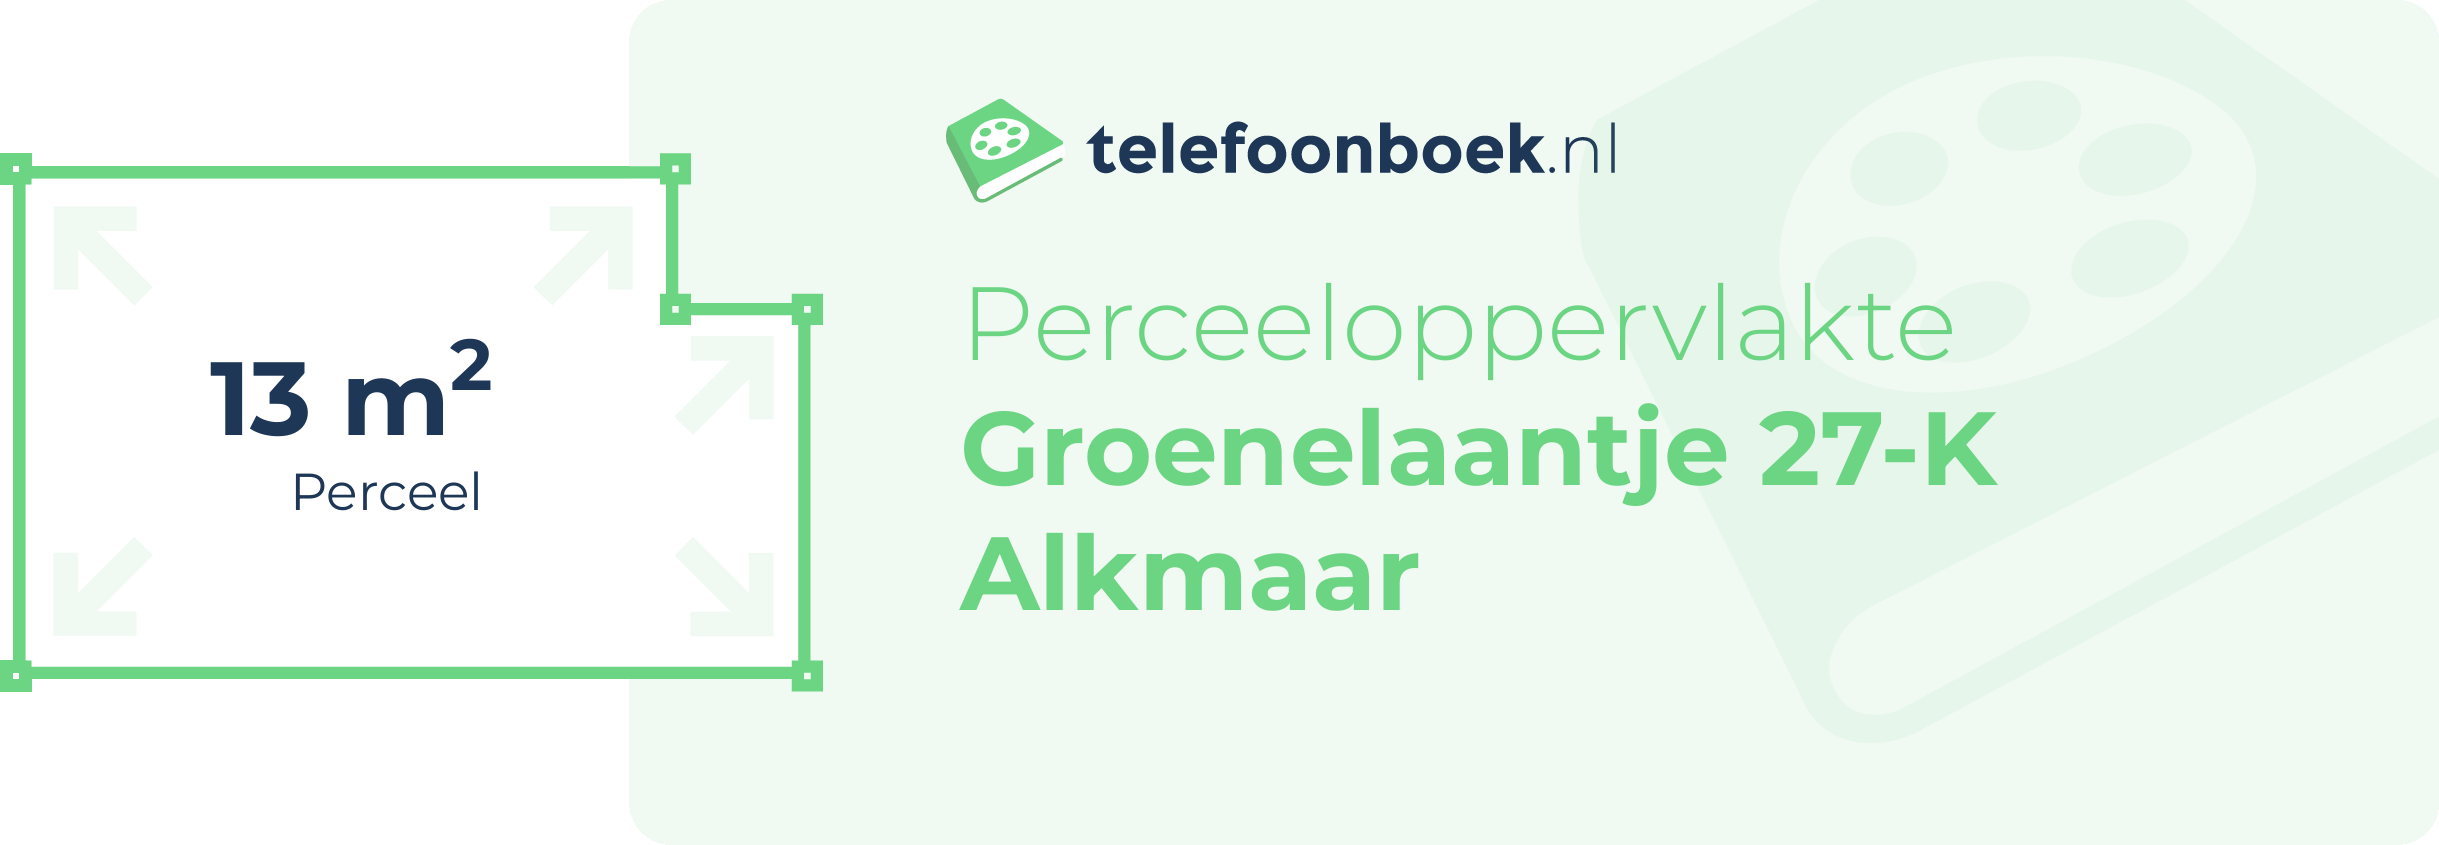 Perceeloppervlakte Groenelaantje 27-K Alkmaar